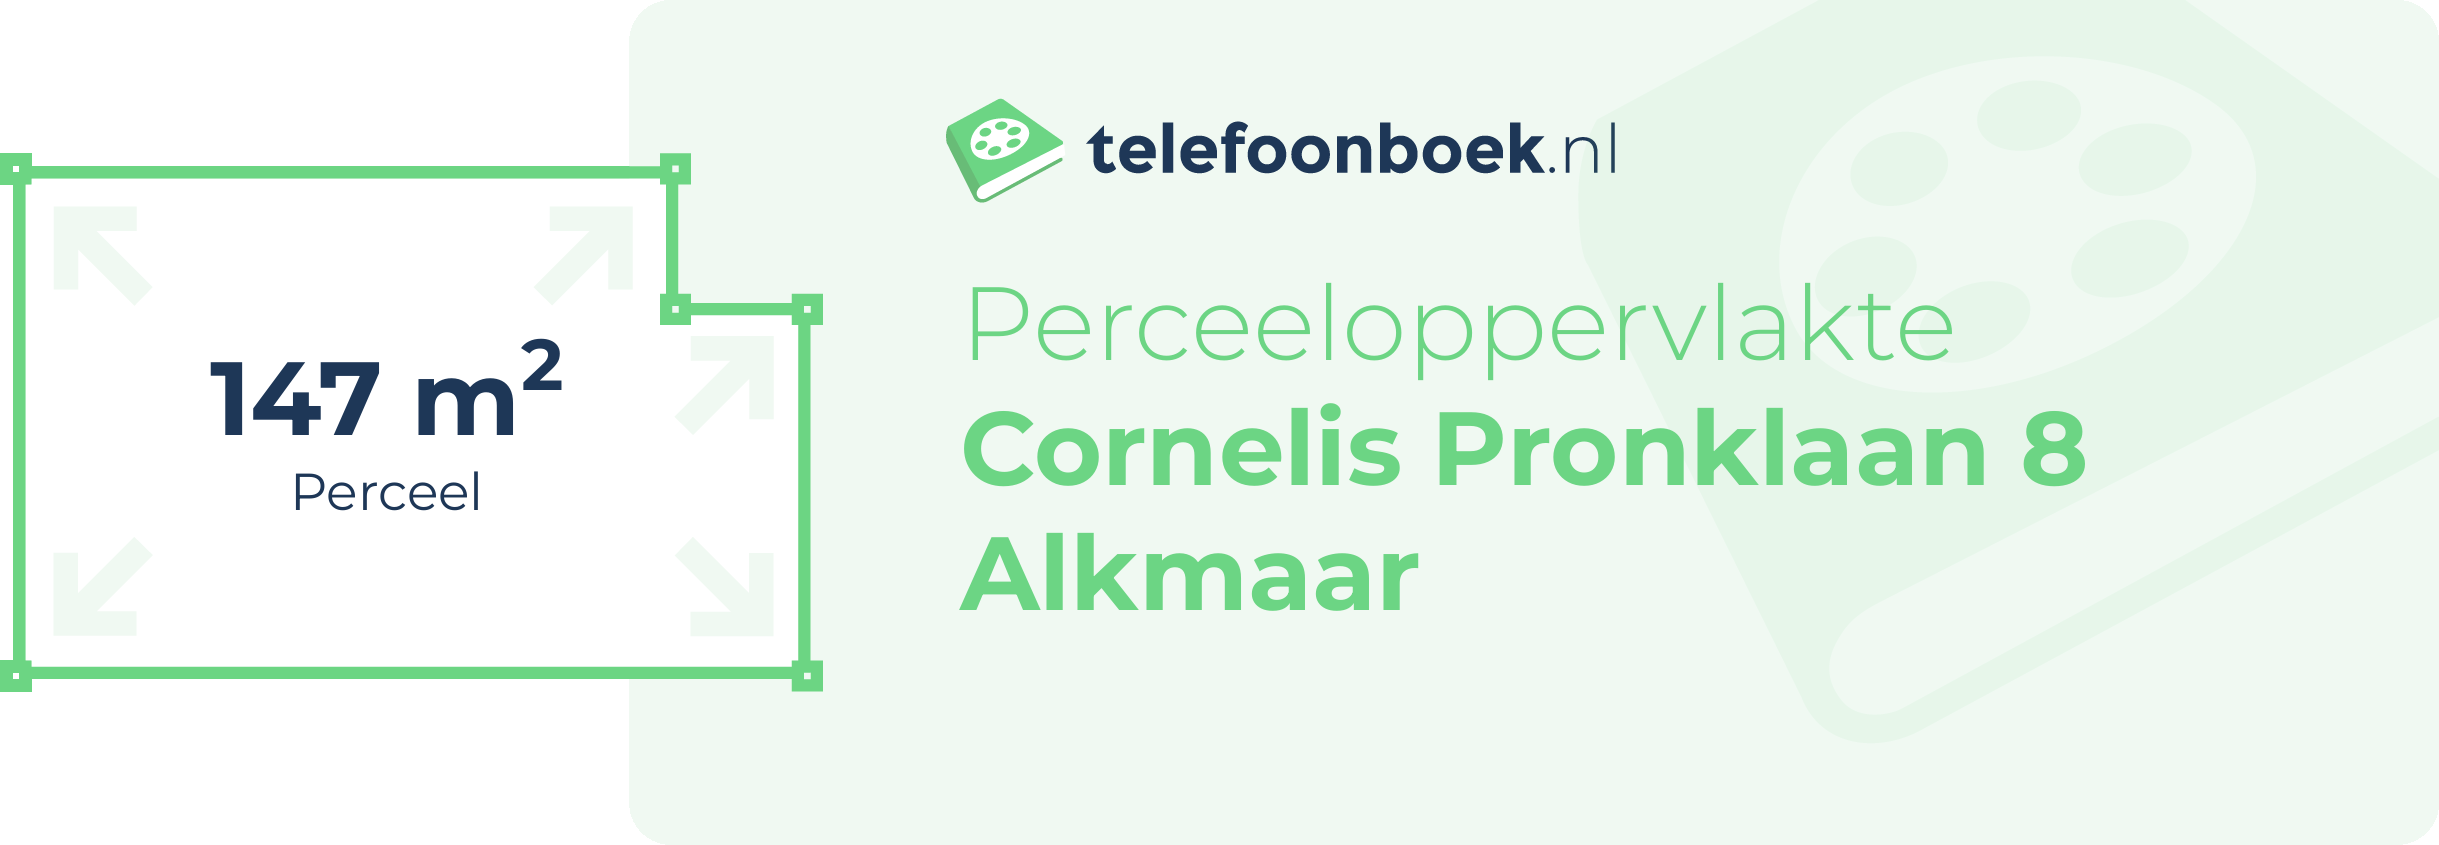 Perceeloppervlakte Cornelis Pronklaan 8 Alkmaar